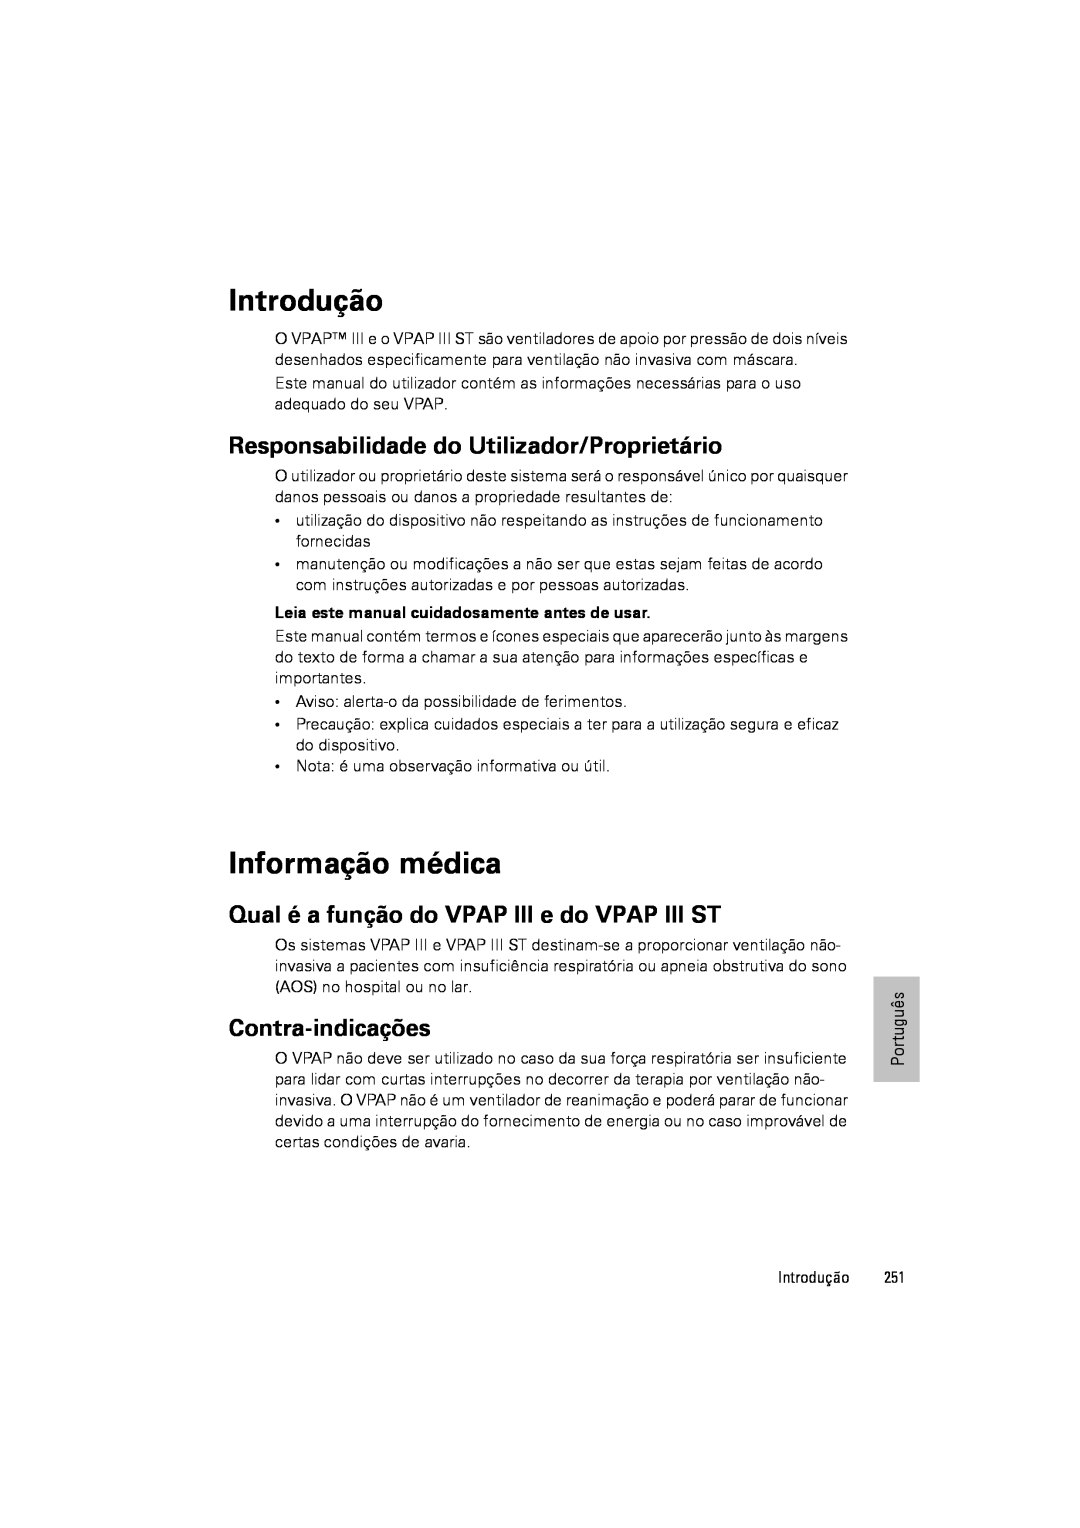 ResMed III & III ST Introdução, Informação médica, Responsabilidade do Utilizador/Proprietário, Contra-indicações 